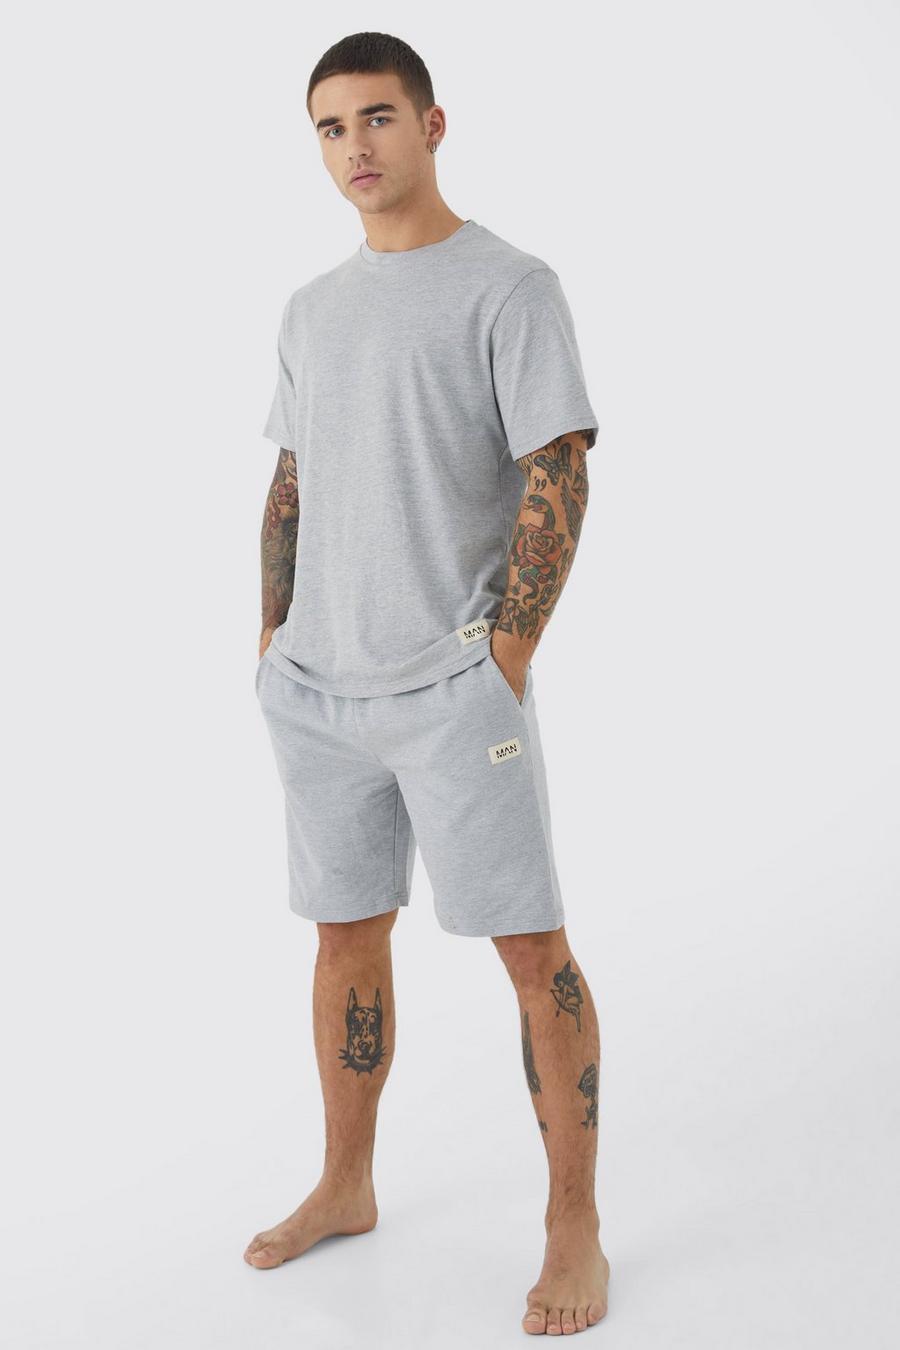 Soft Feel Loungewear Shorts-Set, Grey marl